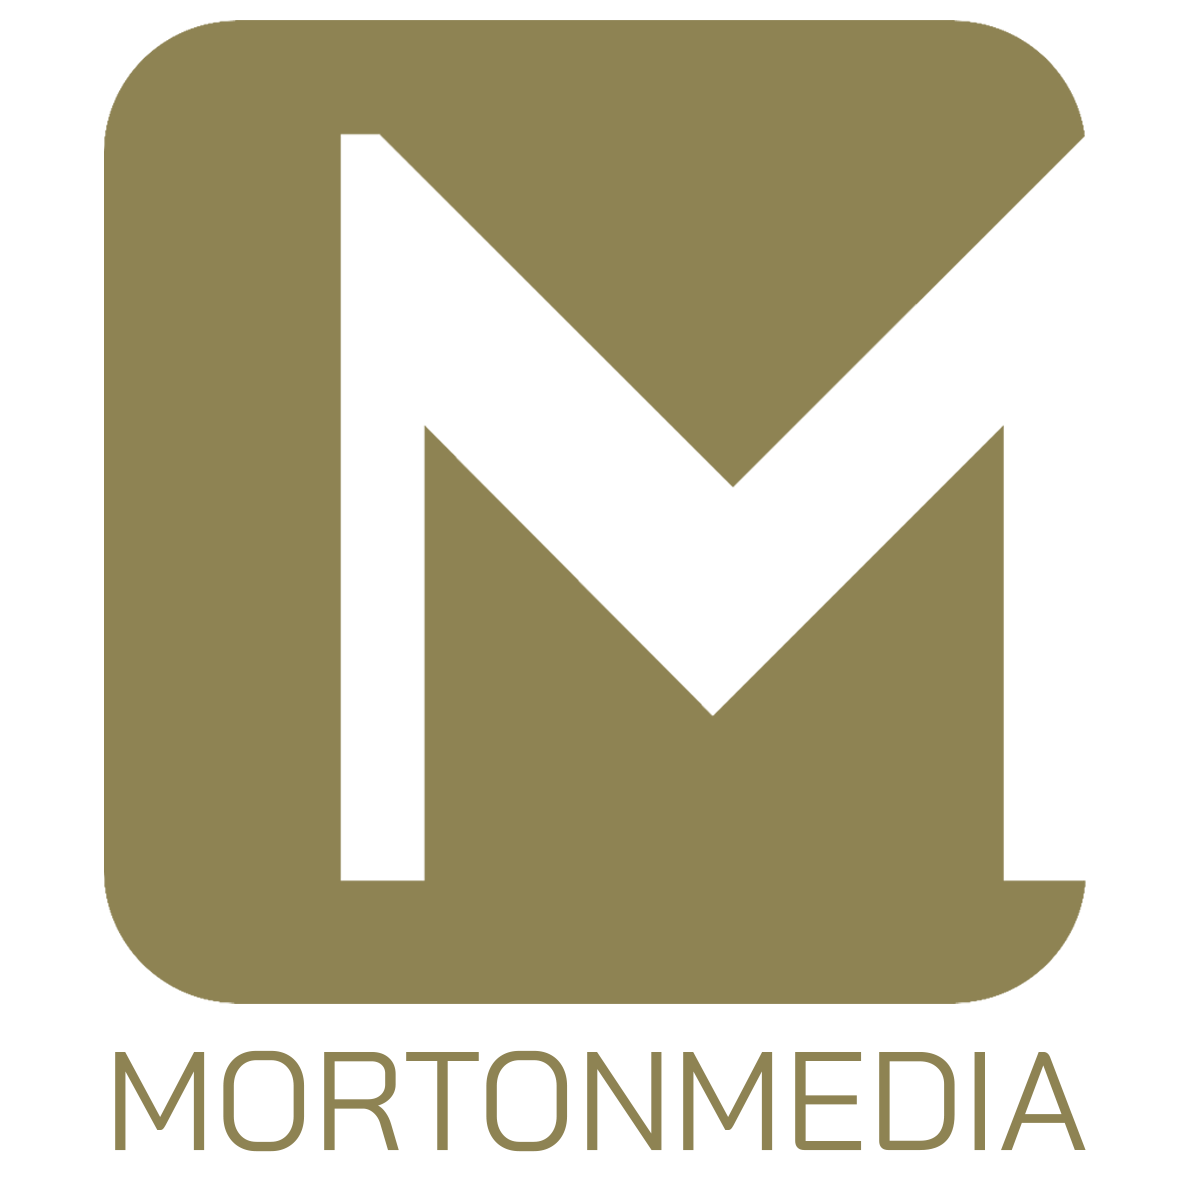 Morton Media